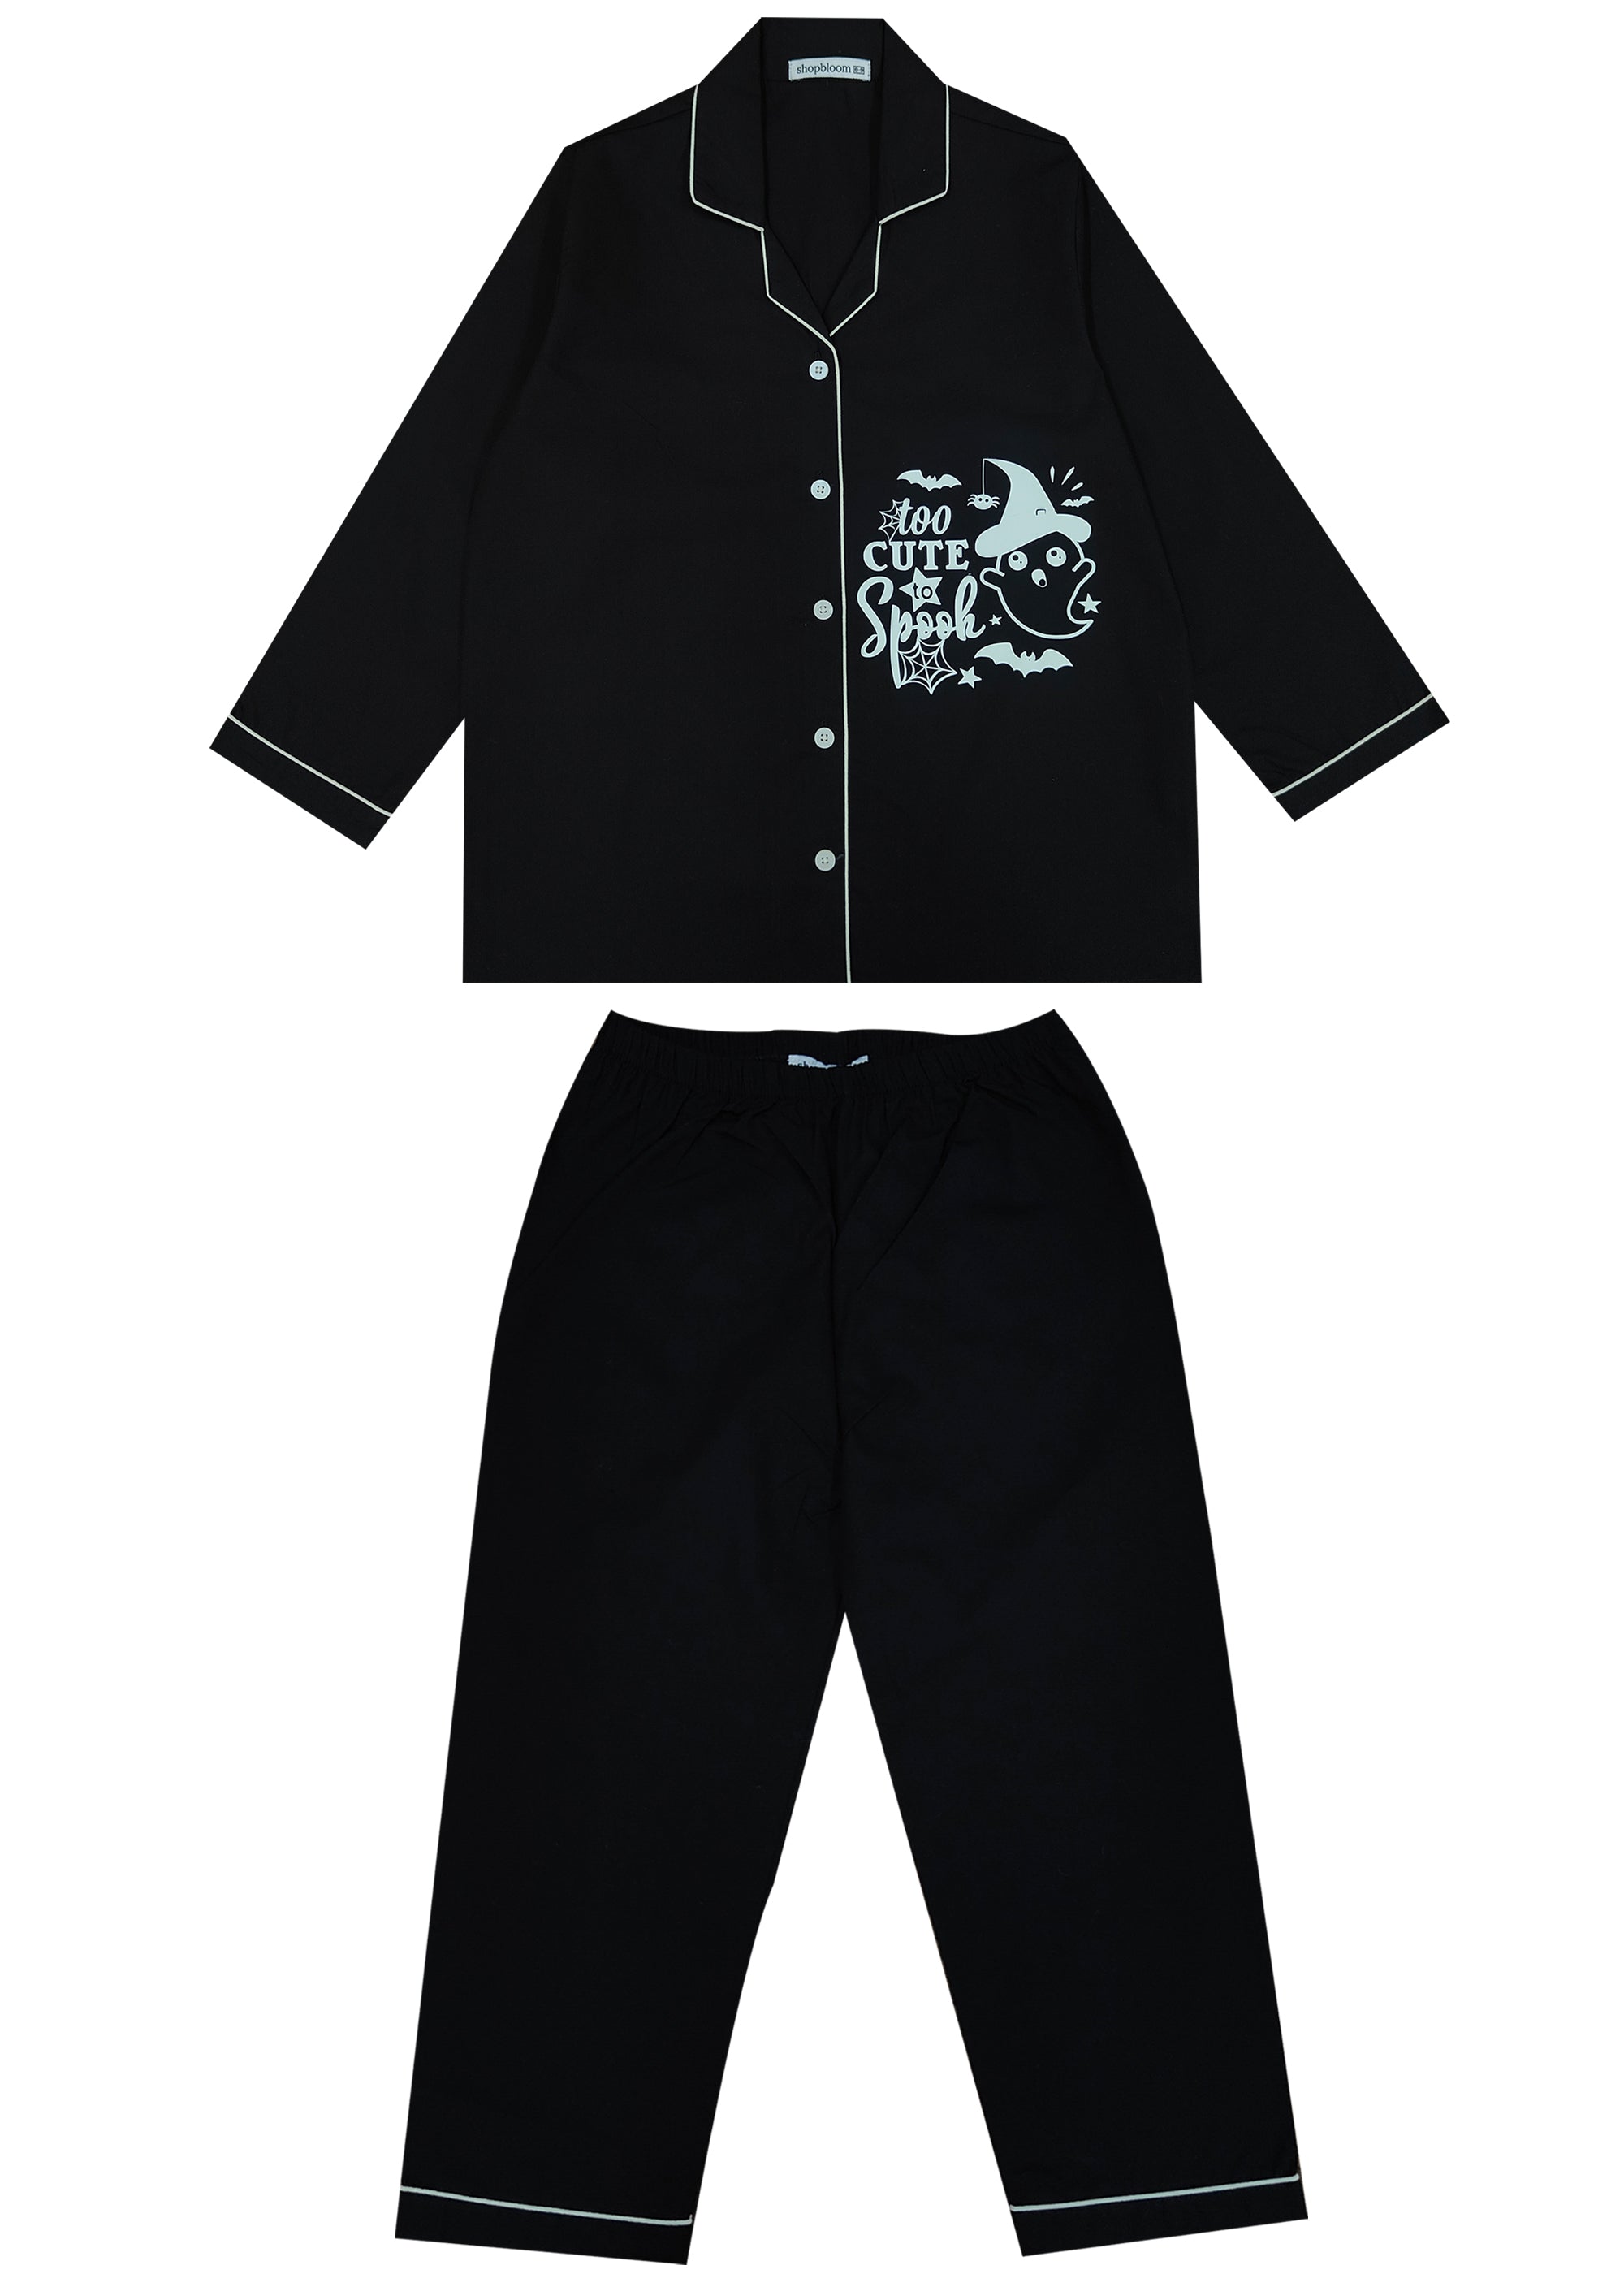 Too Cute to Spook Glow in the Dark  Print Long Sleeve Kids Night Suit